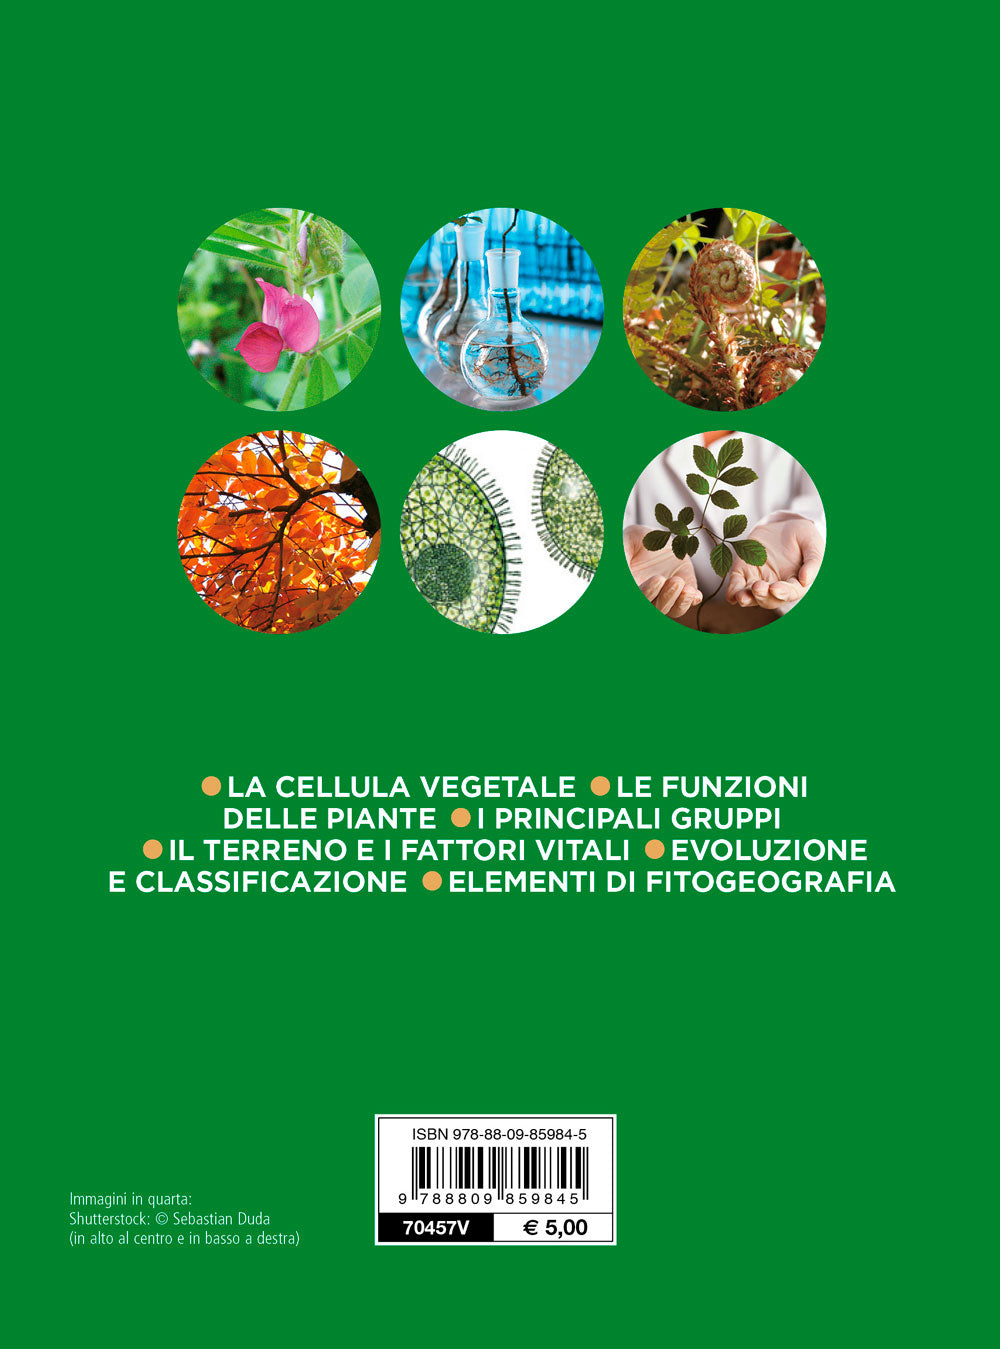 Botanica. La cellula vegetale - Le funzioni delle piante - Il terreno e i fattori vitali - Evoluzione e classificazione - I principali gruppi delle piante - Elementi di fitogeografia